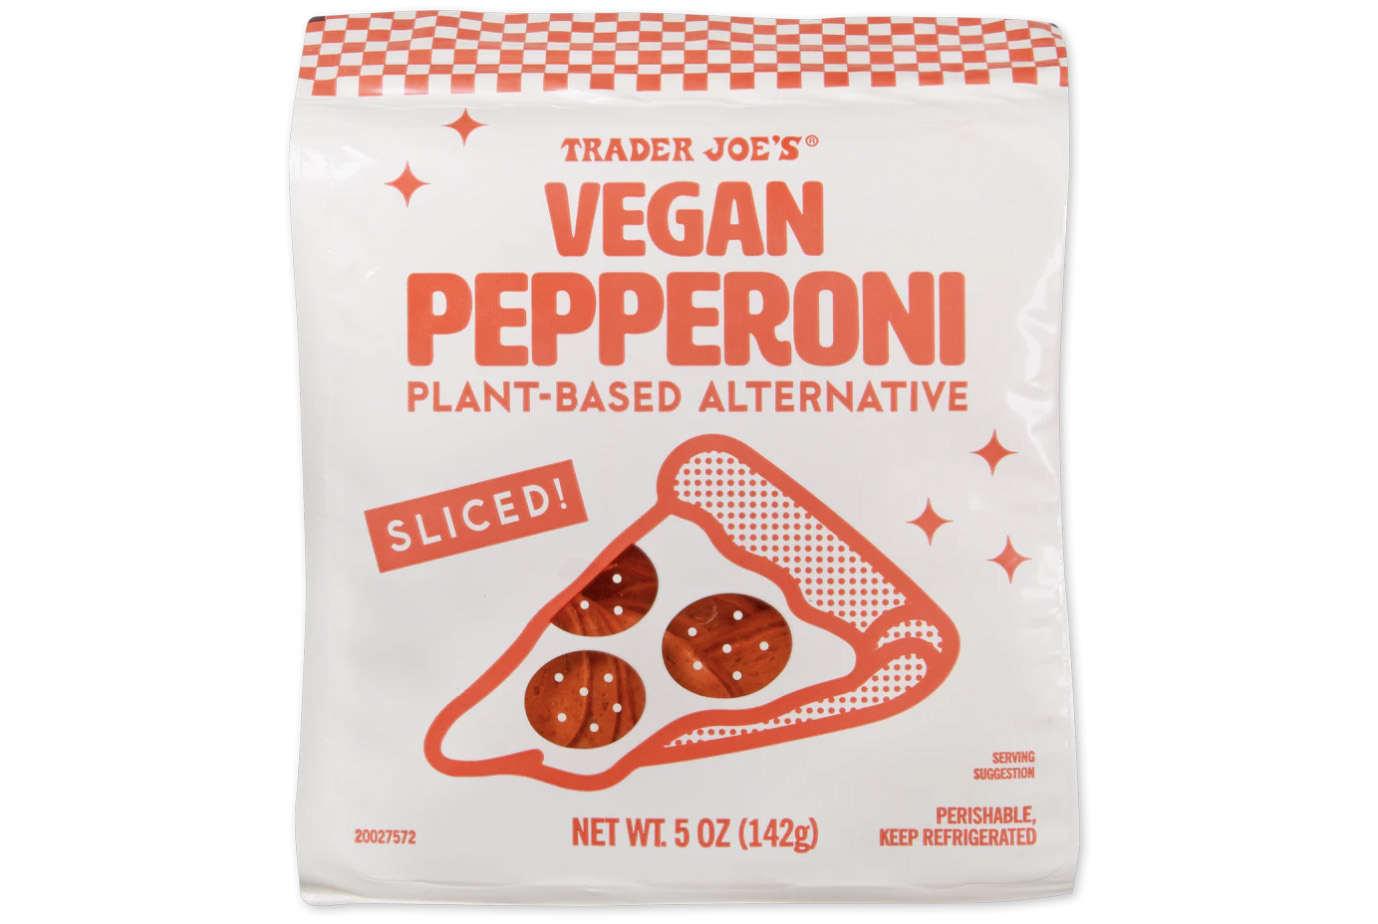 Vegan Pepperoni